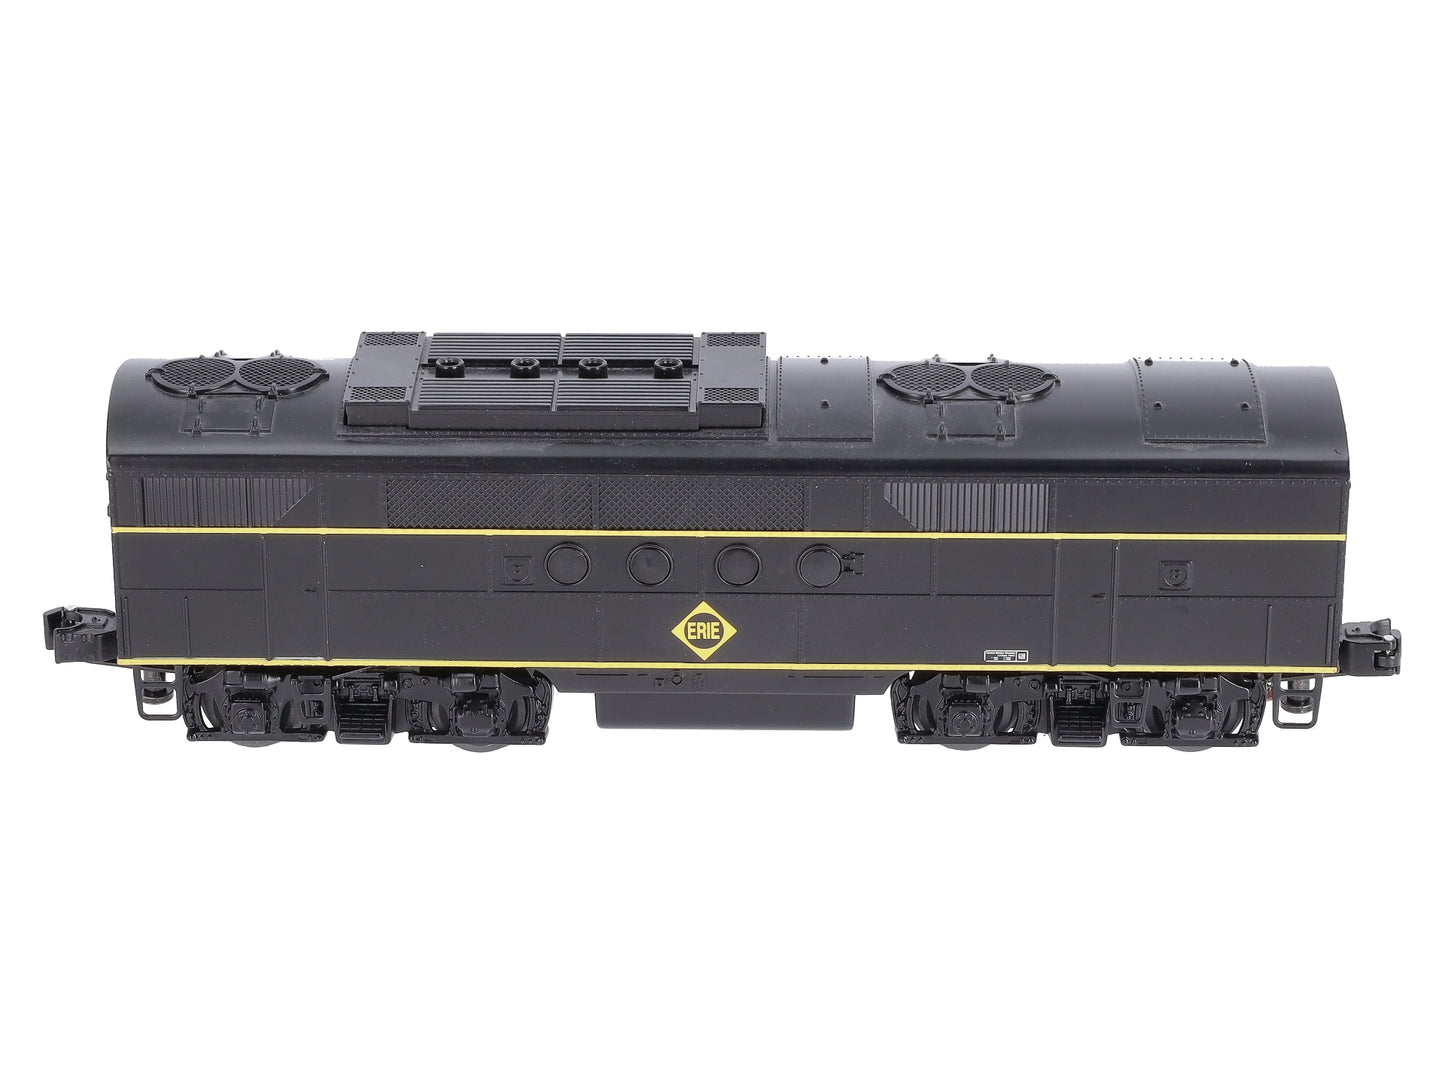 Lionel 6-82304 Erie LionChief Plus FT Powered B-Unit Diesel Locomotive